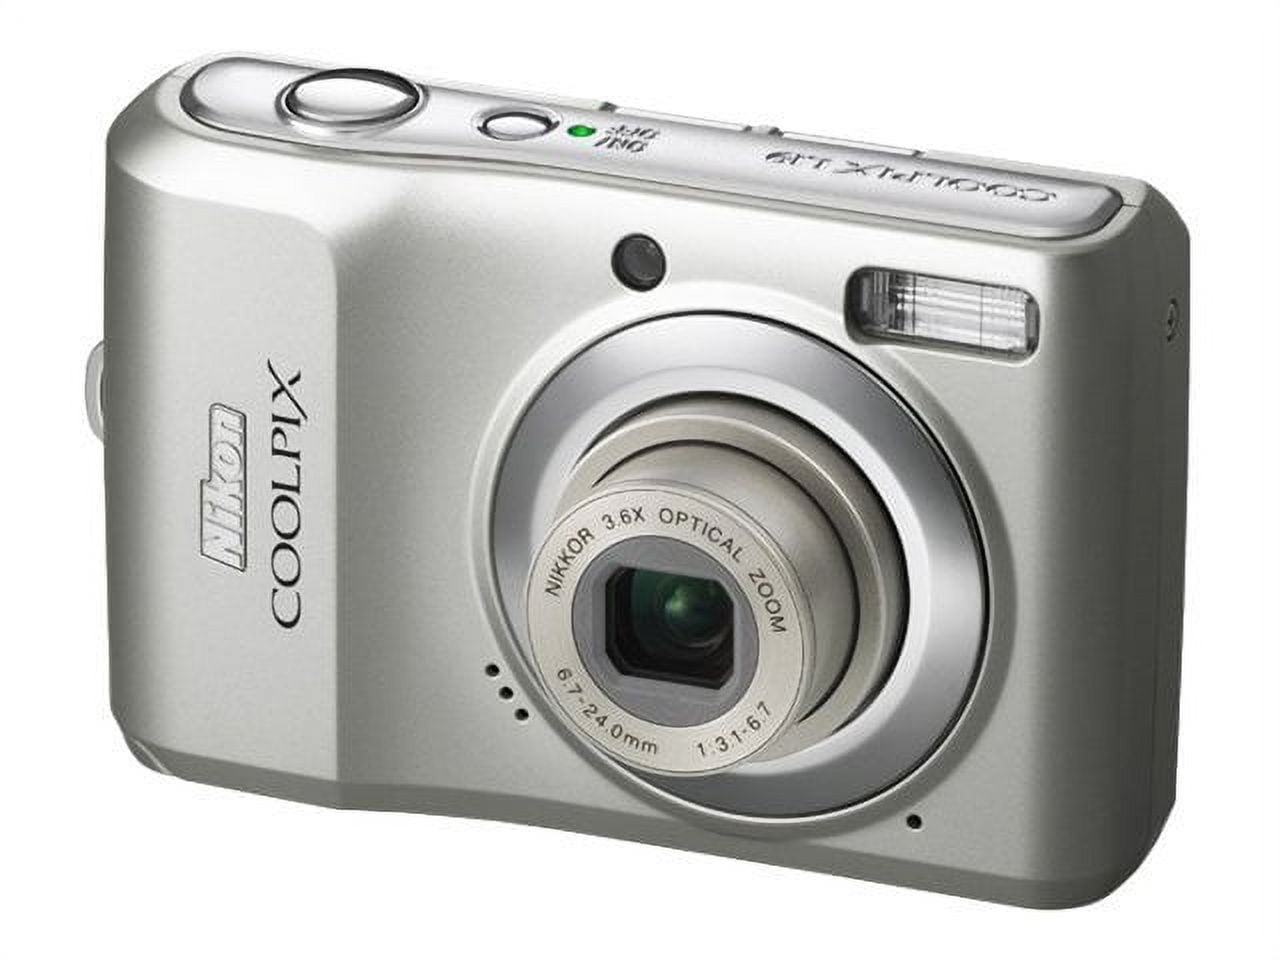 Nikon Coolpix L19 - Digital camera - compact - 8.0 MP - 3.6x